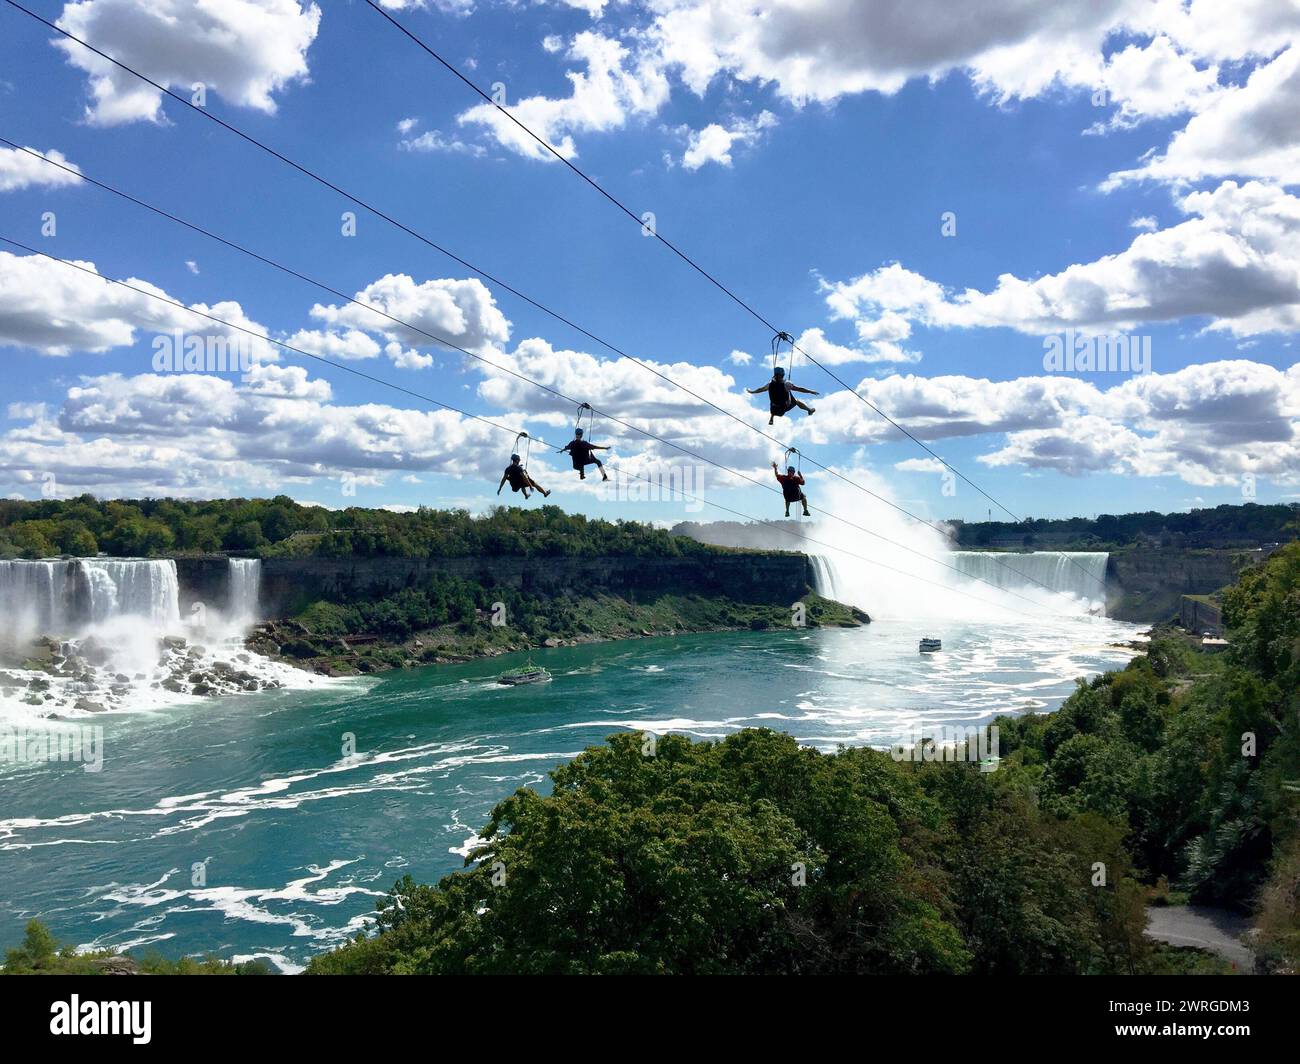 Coureurs glissant sur la tyrolienne jusqu'aux chutes de Niagara Falls, Ontario. Banque D'Images